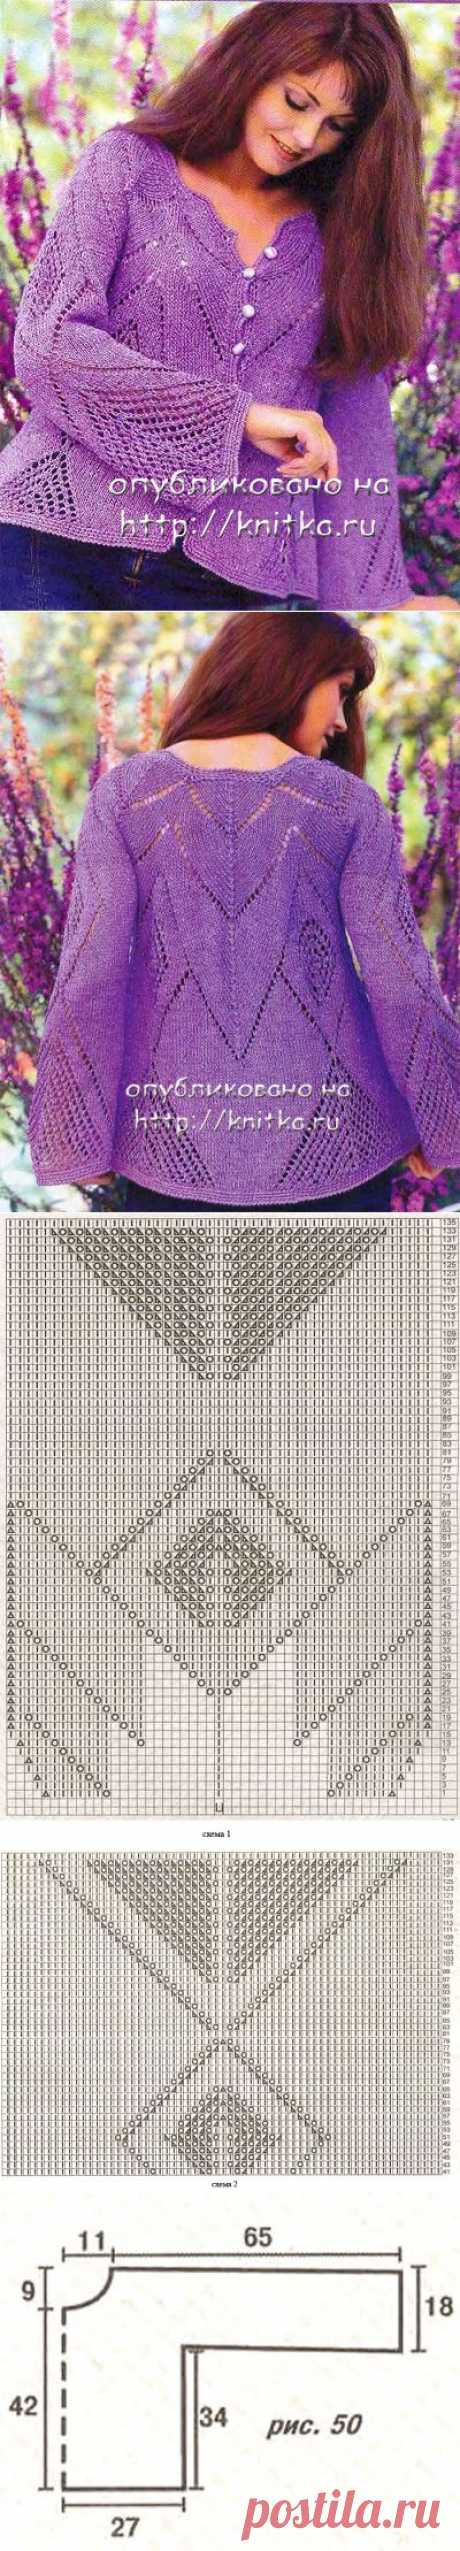 Фиолетовый ажурный жакет из рубрики Вязание для женщин. Вязание спицами модели и схемы на kNITKA.ru